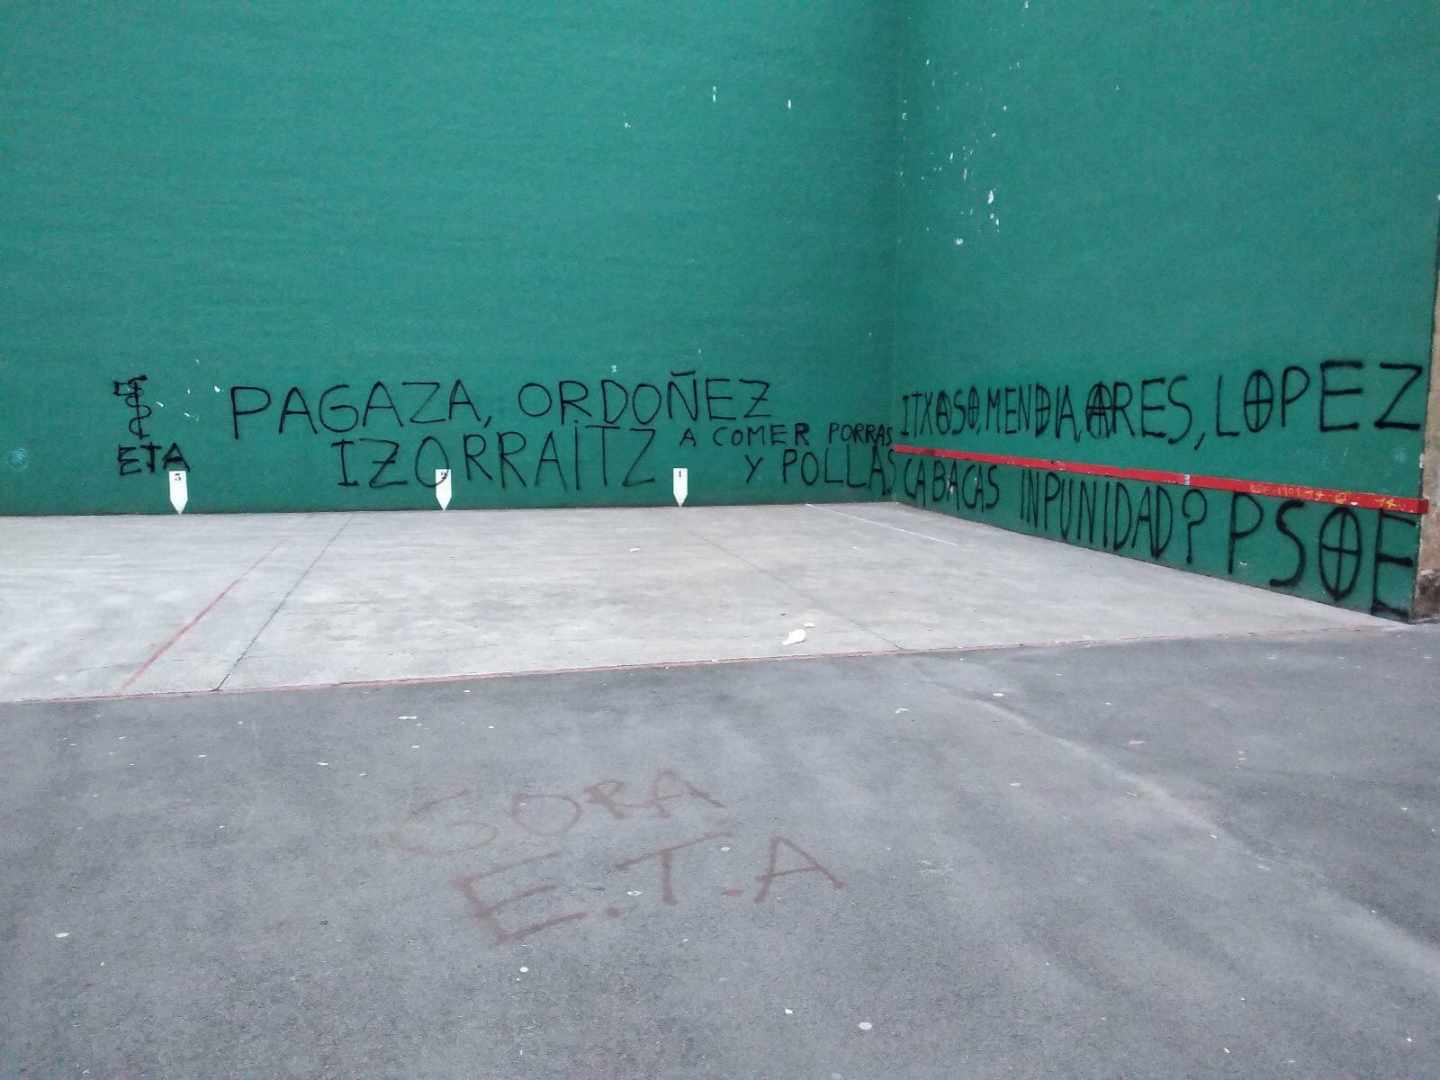 Aparecen pintadas amenazantes con el anagrama de ETA contra Pagaza, Ordóñez y López